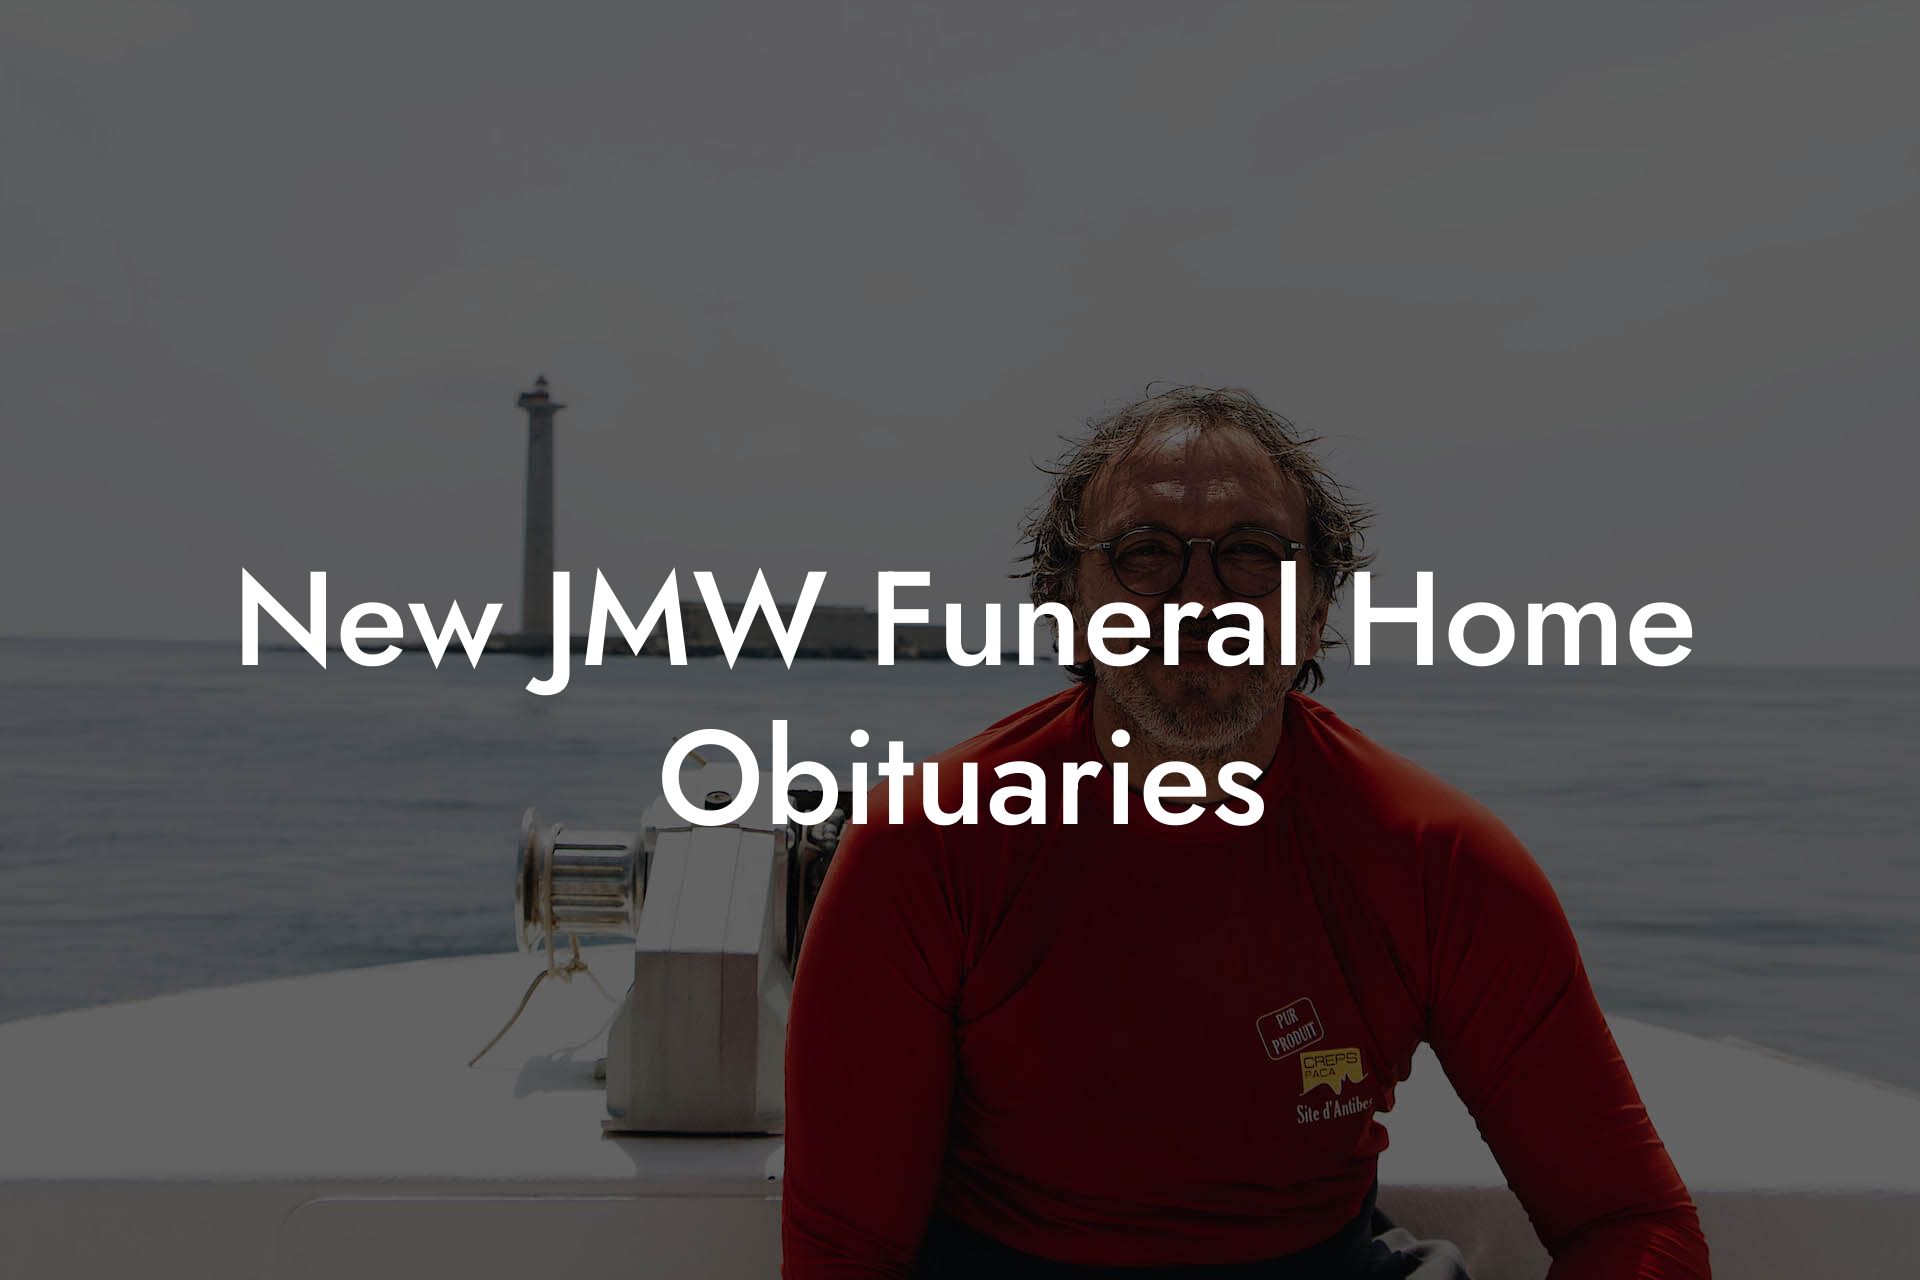 New JMW Funeral Home Obituaries